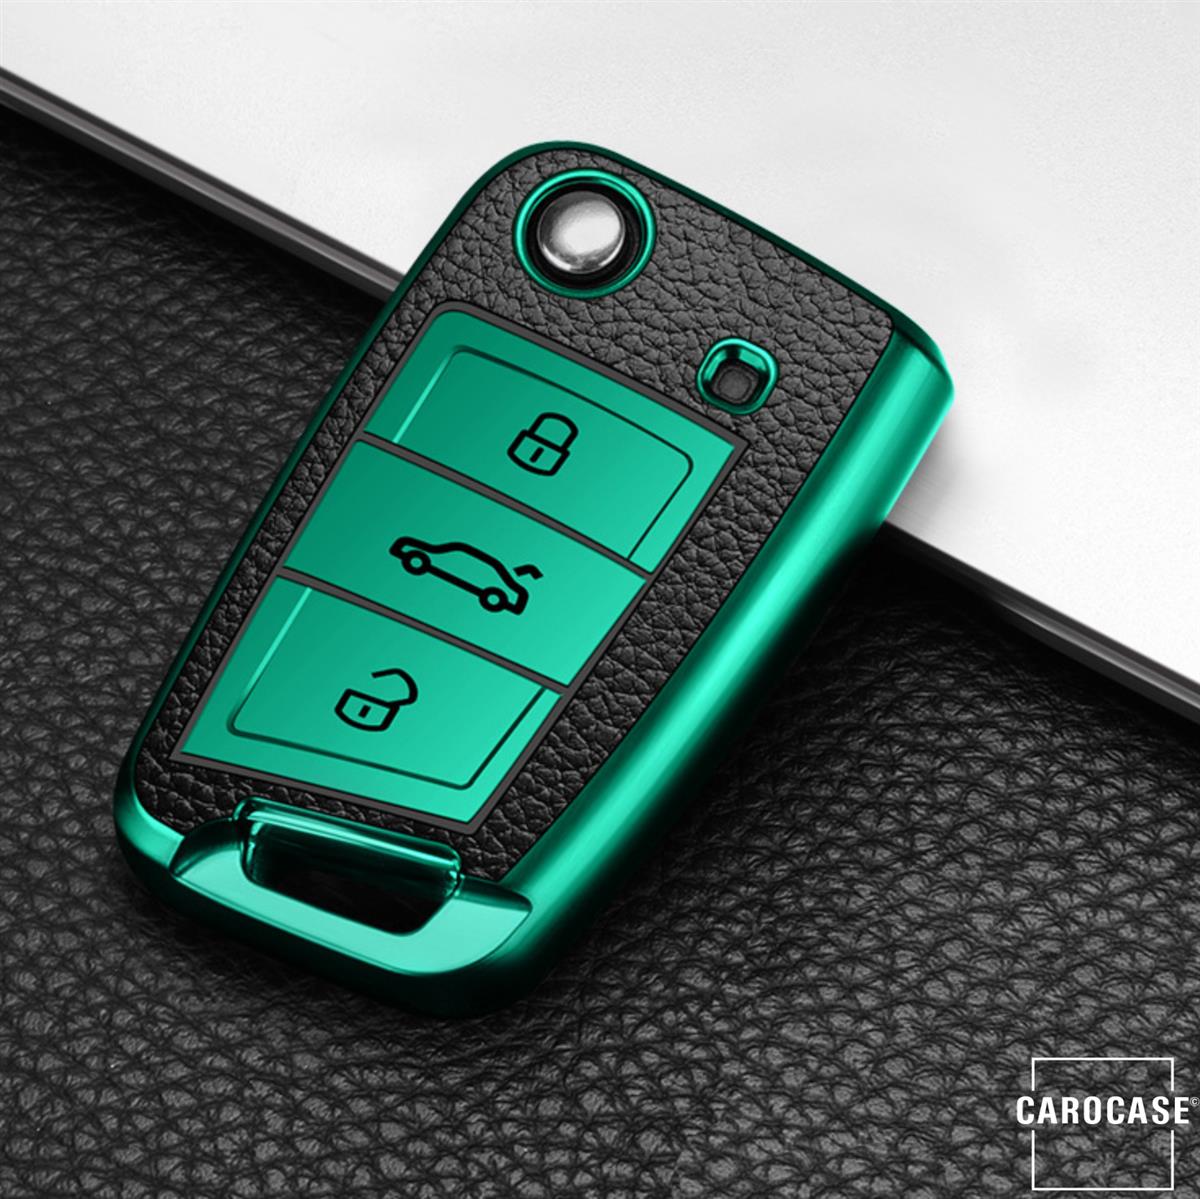 Silikon Leder-Look Schlüssel Cover passend für Volkswagen, Skoda